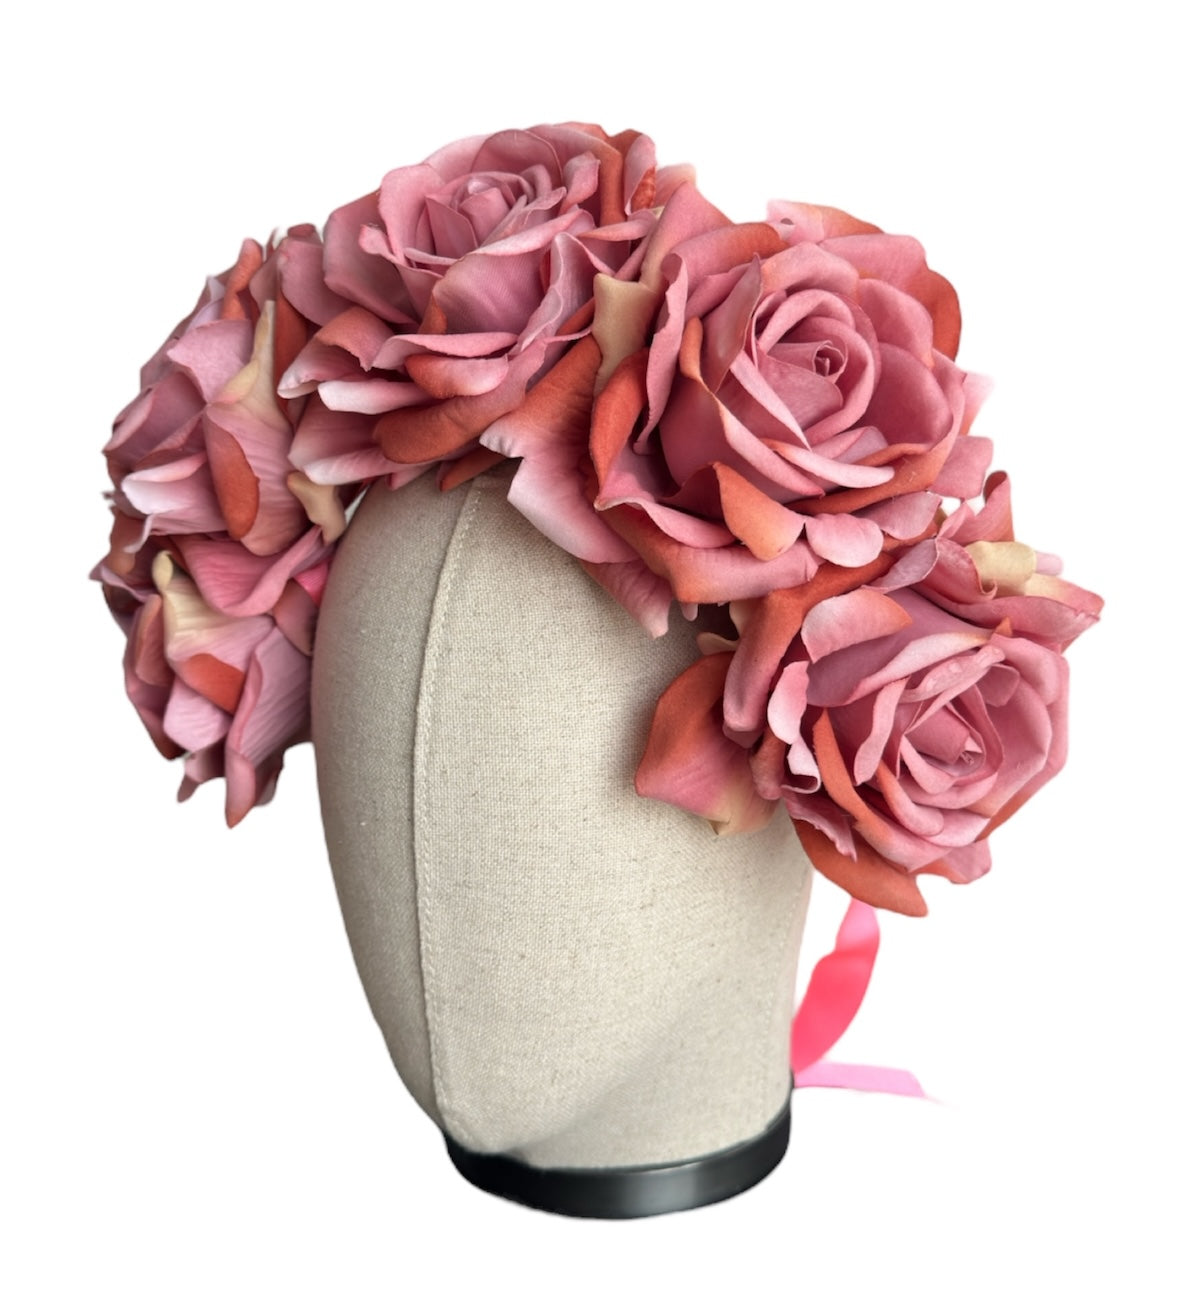 Tiara with dark pink roses ROSES VII